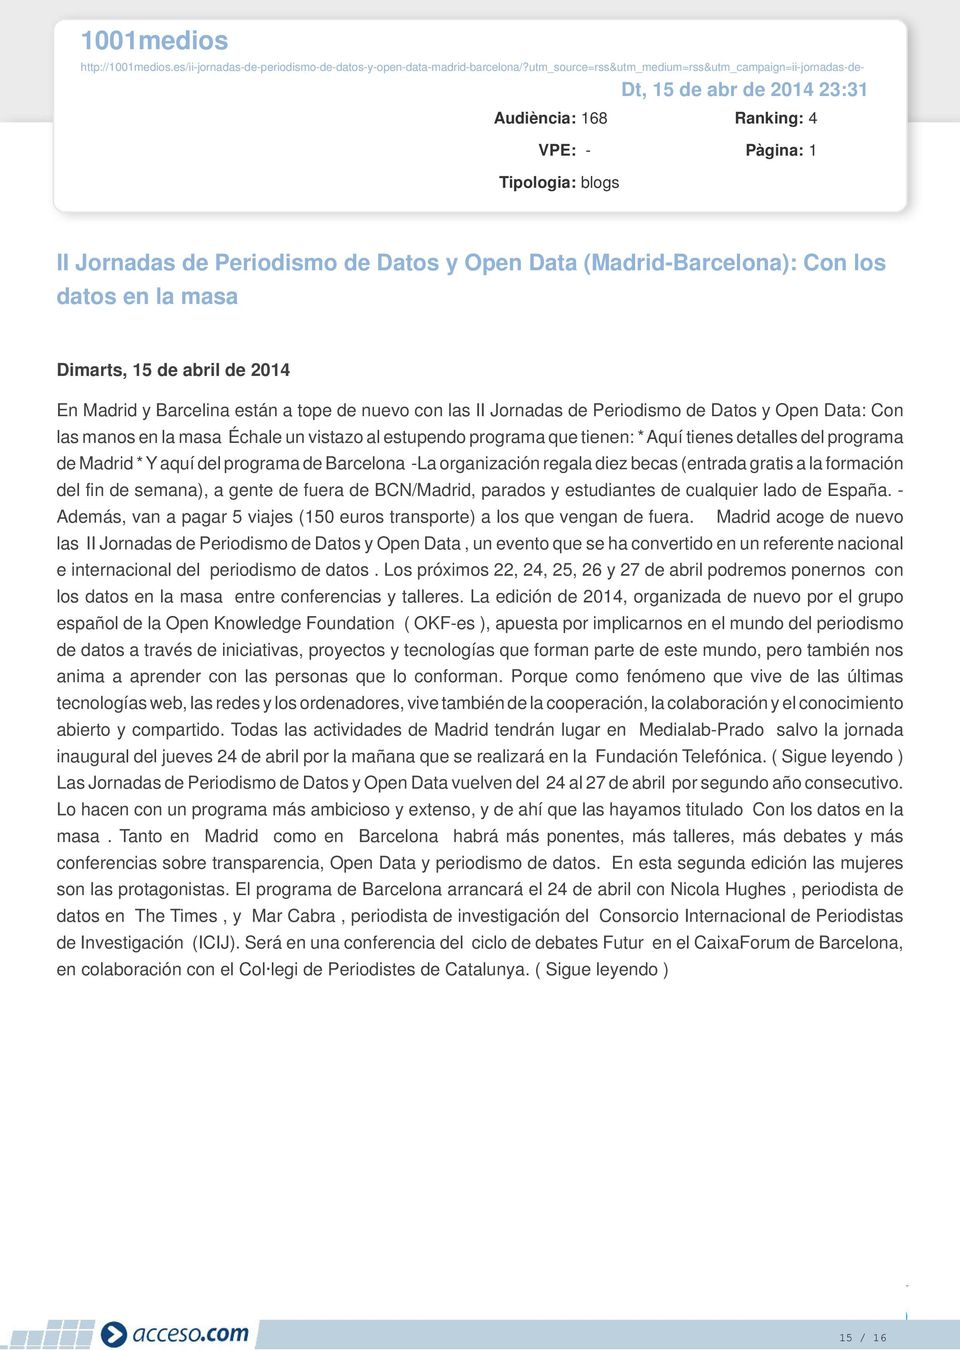 (Madrid-Barcelona): Con los datos en la masa Dimarts, 15 de abril de 2014 En Madrid y Barcelina están a tope de nuevo con las II Jornadas de Periodismo de Datos y Open Data: Con las manos en la masa